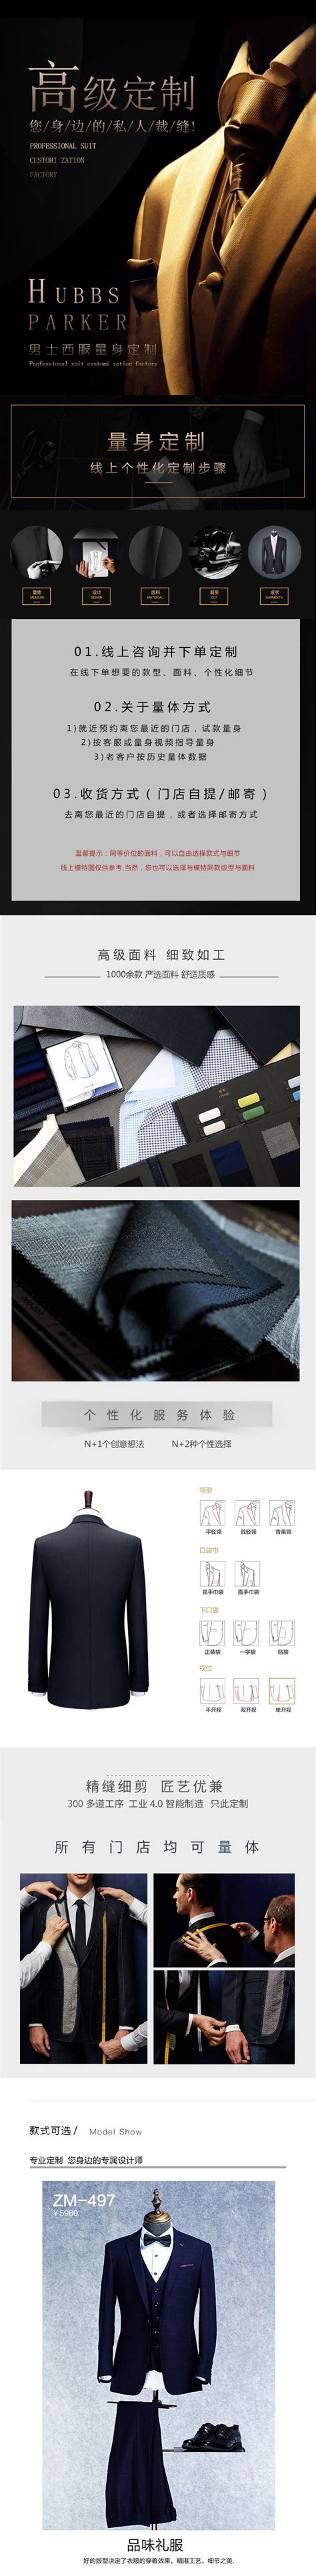 北京量身定制品牌西服_北京西装定做_北京120S羊毛西服订制 -www.milanho.com